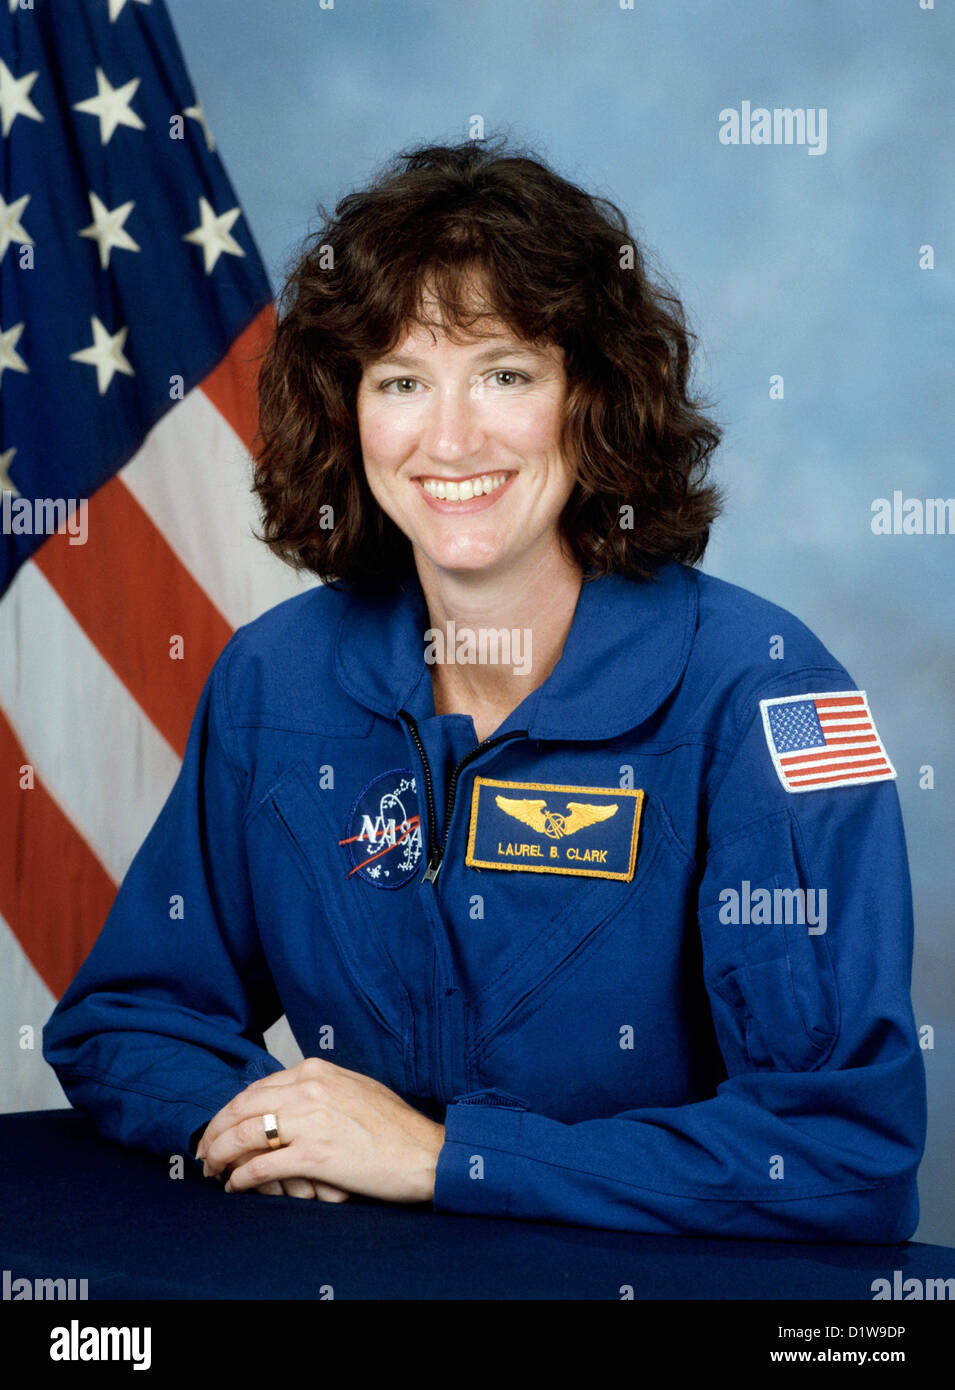 Laurel Clark, l'astronaute américain qui est mort lors de l'échec de la rentrée de la navette spatiale Columbia. Banque D'Images